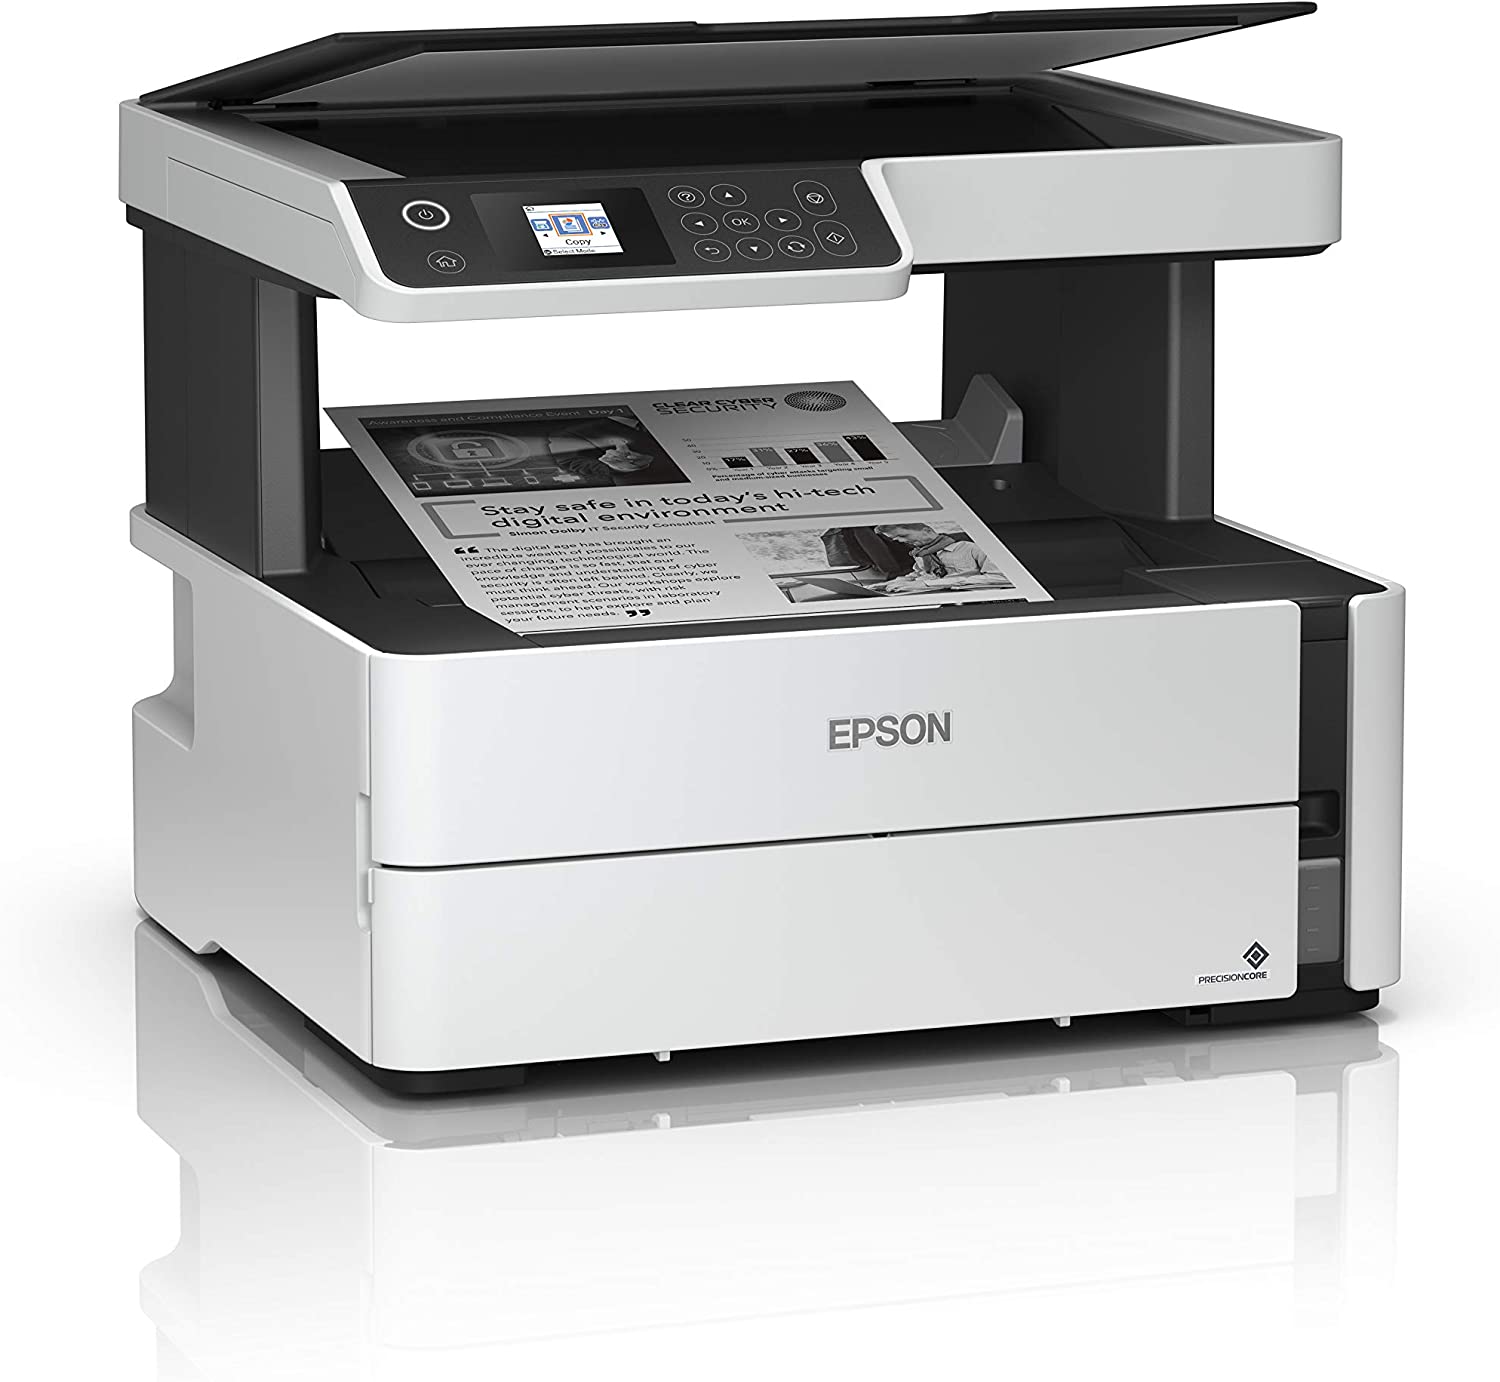 Epson EcoTank ETM2170 Impresora Multifuncion Monocromo Duplex WiFi 39ppm